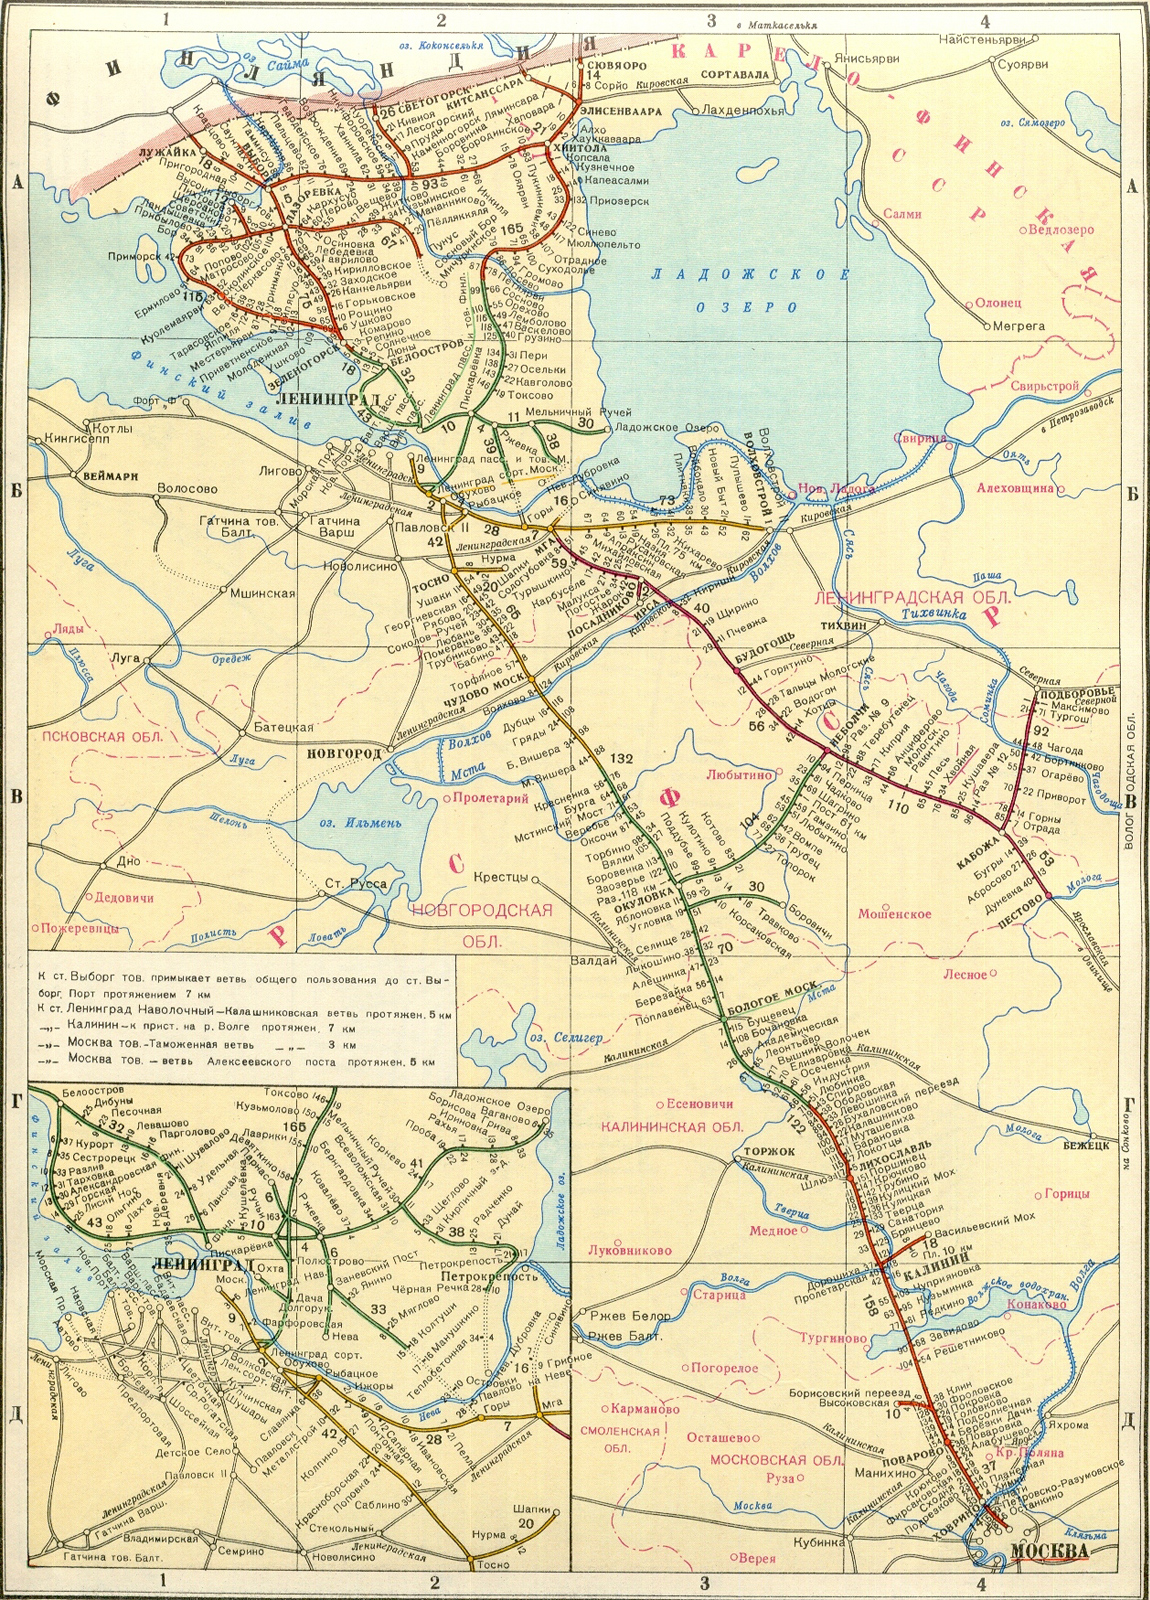 1952. October Railway